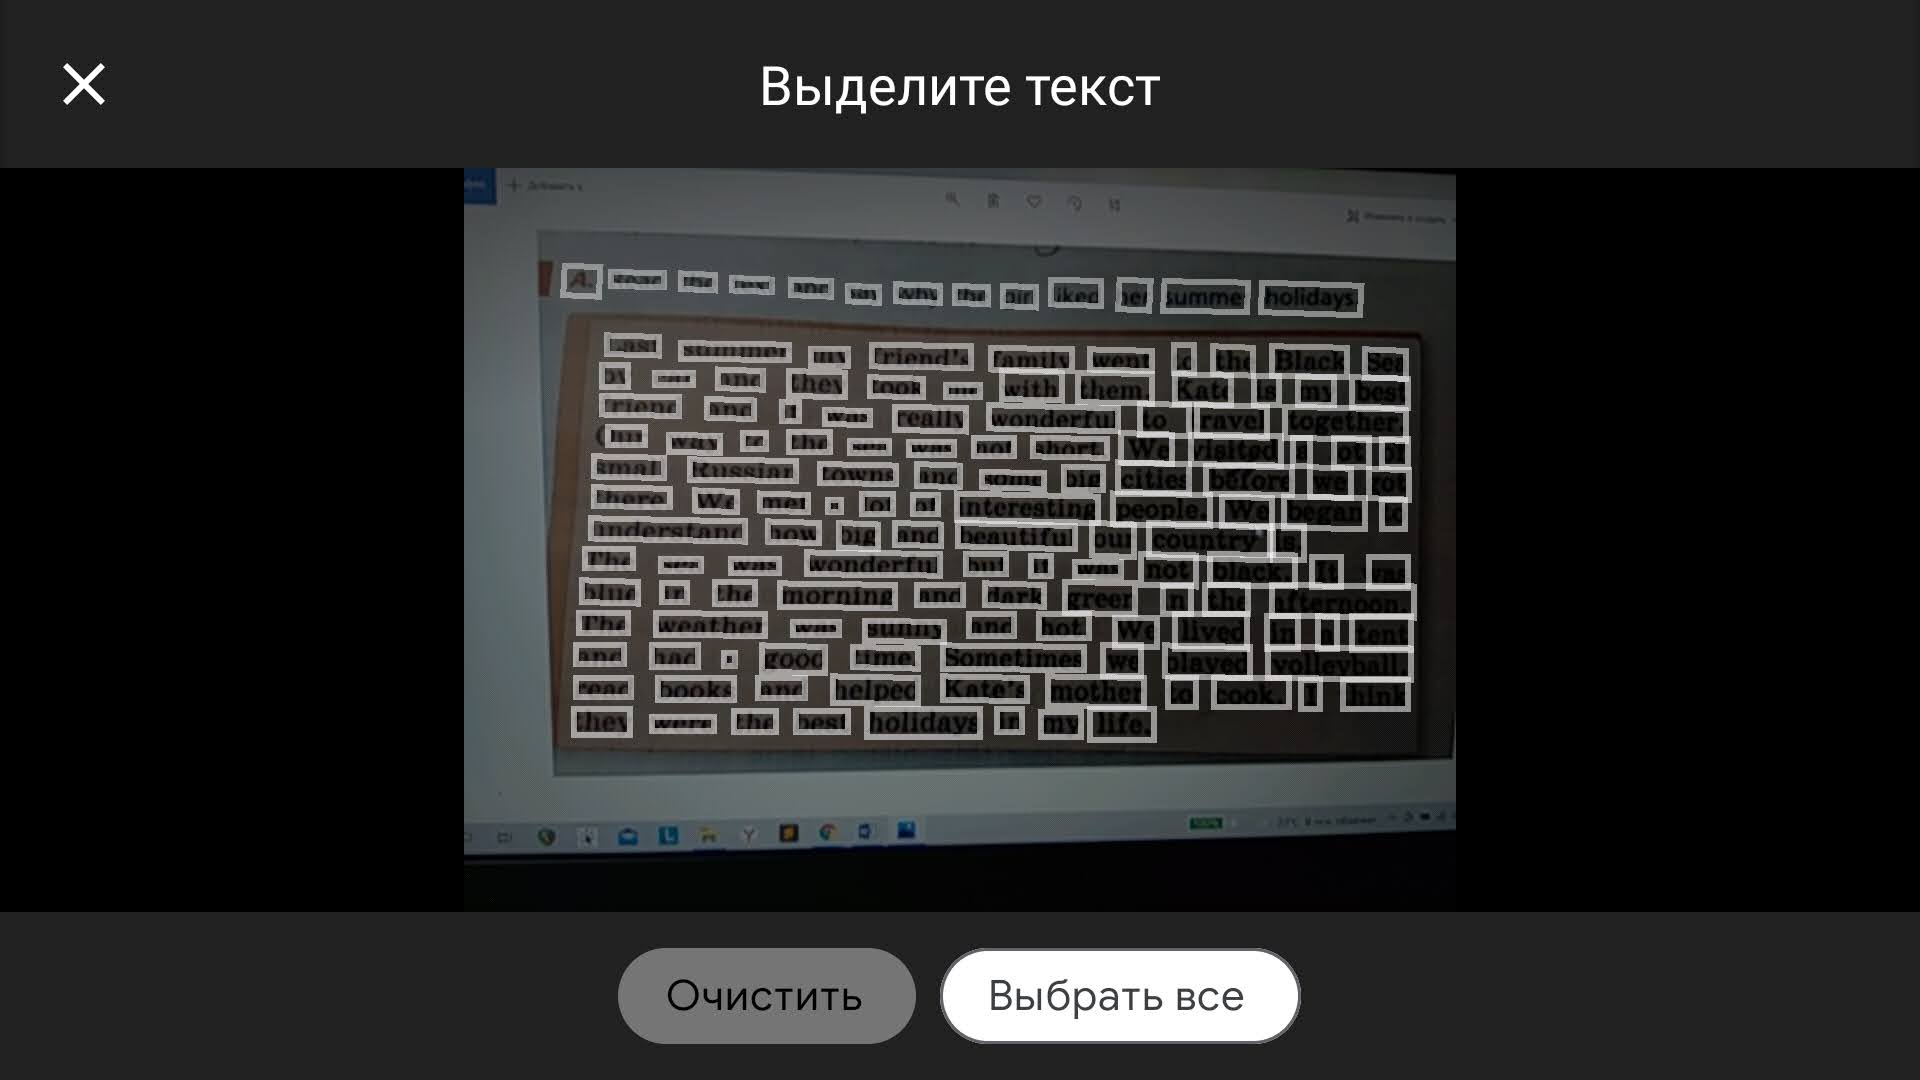 Переводчик фотографий с английского на русский (и не только): Яндекс, Google, Microsoft